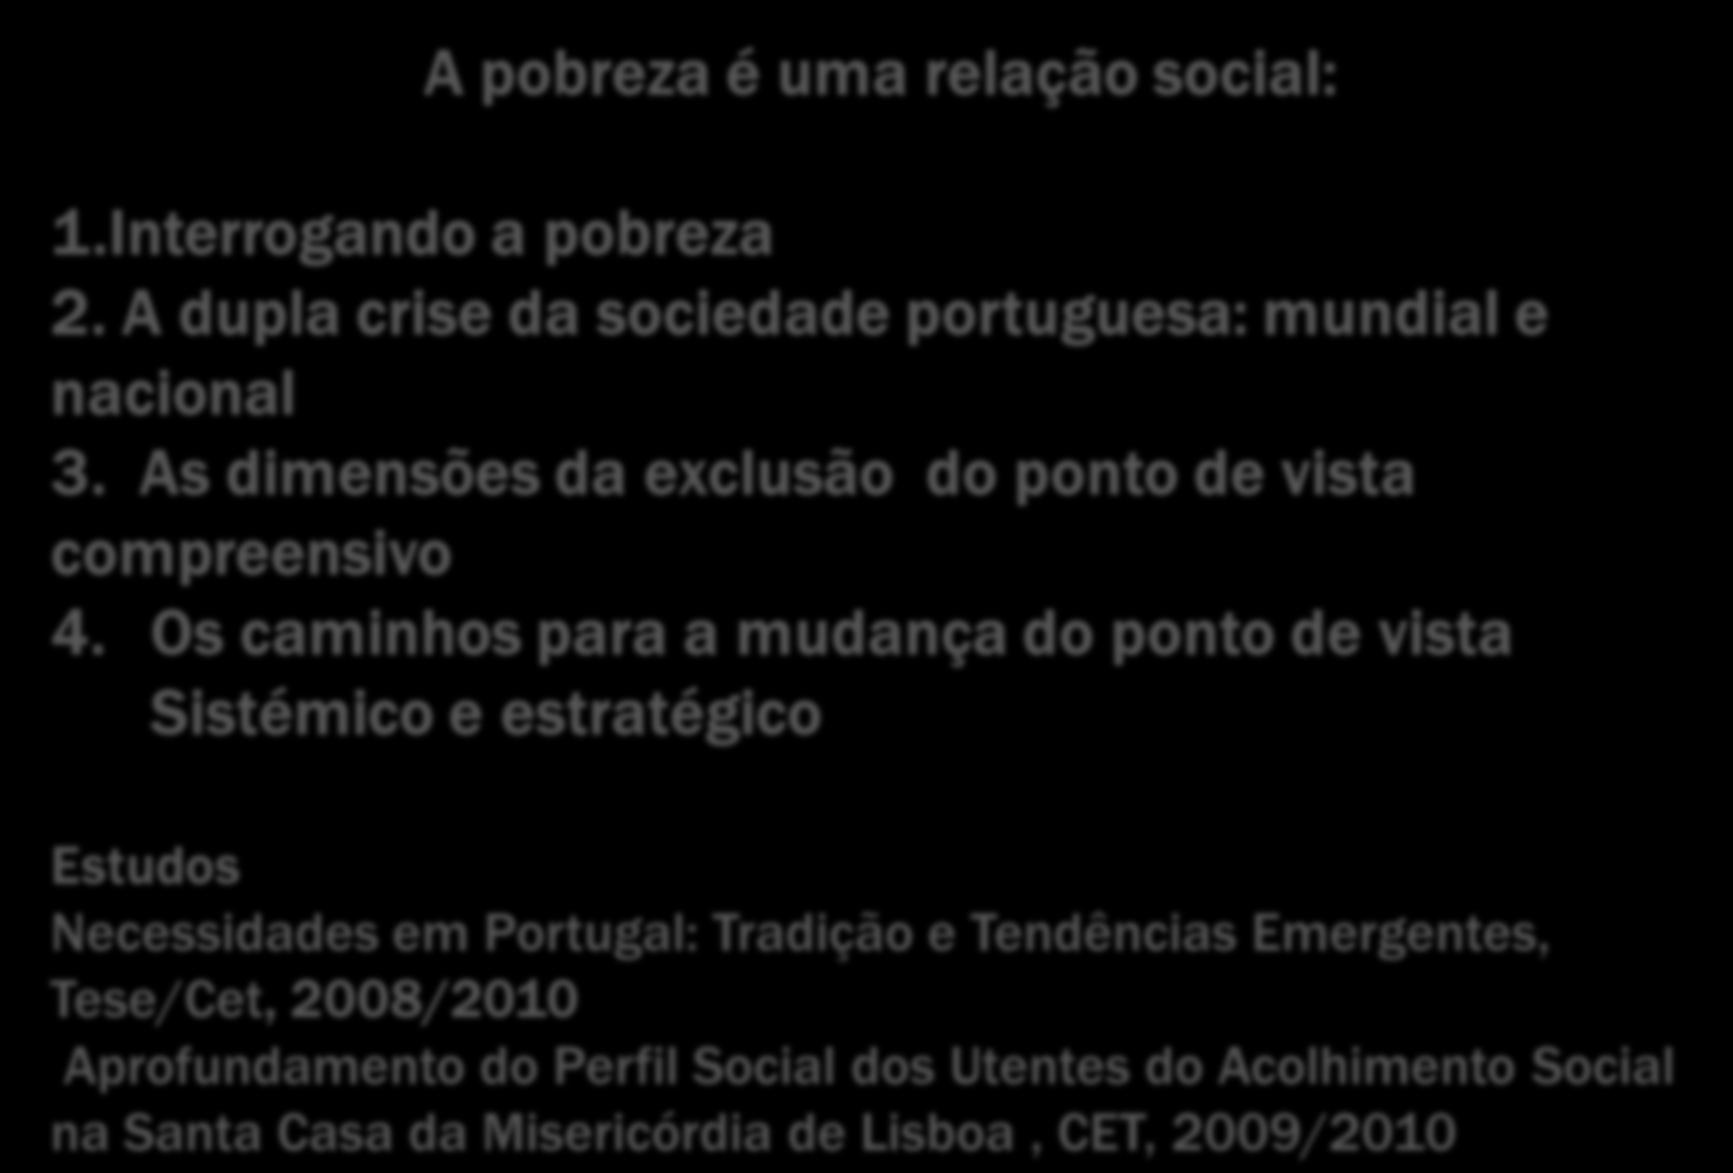 A pobreza é uma relação social: 1.Interrogando a pobreza 2. A dupla crise da sociedade portuguesa: mundial e nacional 3. As dimensões da exclusão do ponto de vista compreensivo 4.